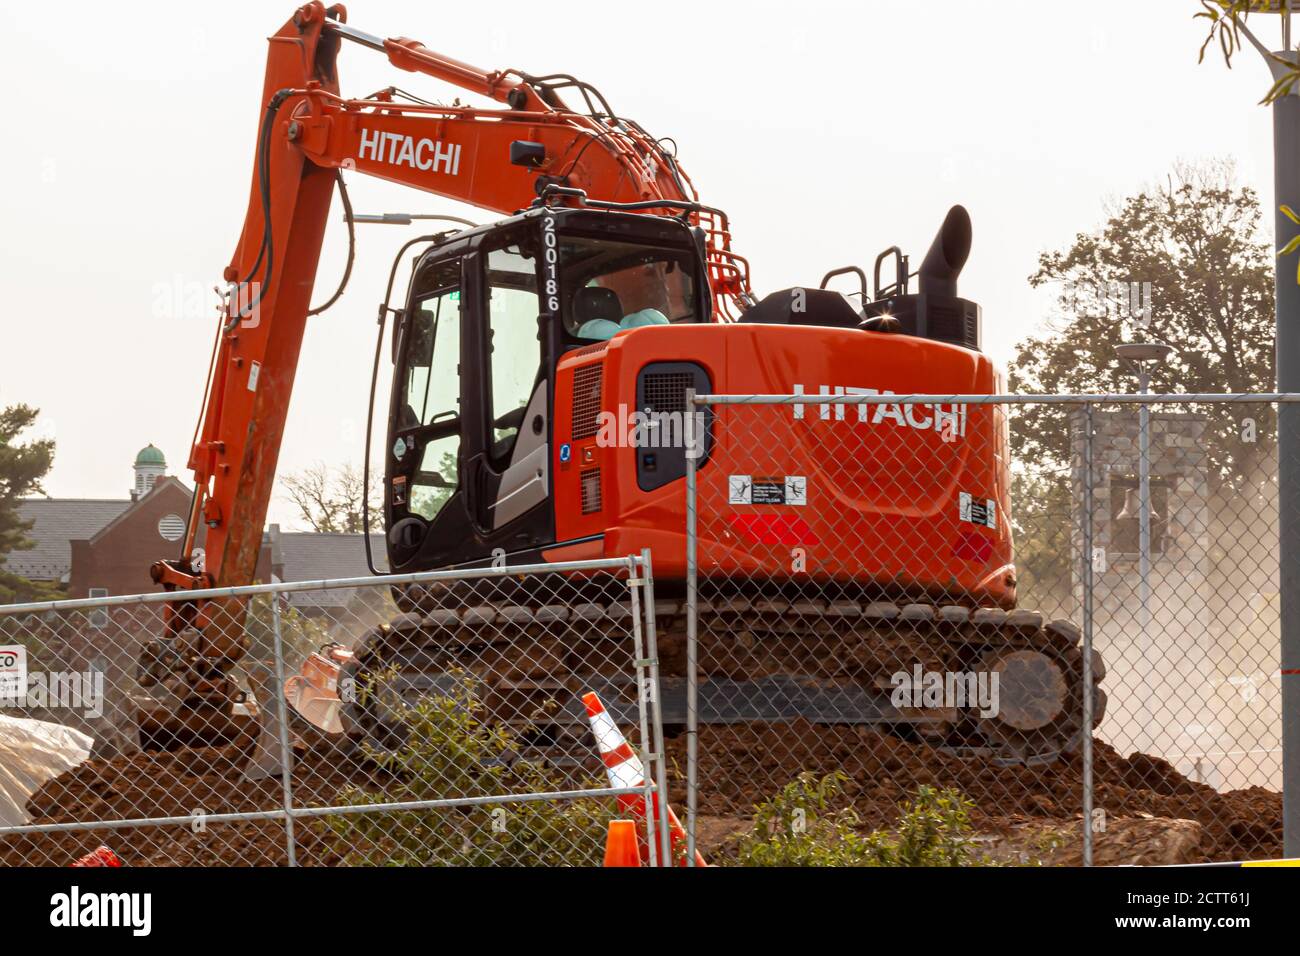 Bethesda, MD, USA 09/12/2020: Vista de una obra tomada mientras las máquinas de trabajo están funcionando. La imagen presenta una excavadora Hitachi roja detrás Foto de stock